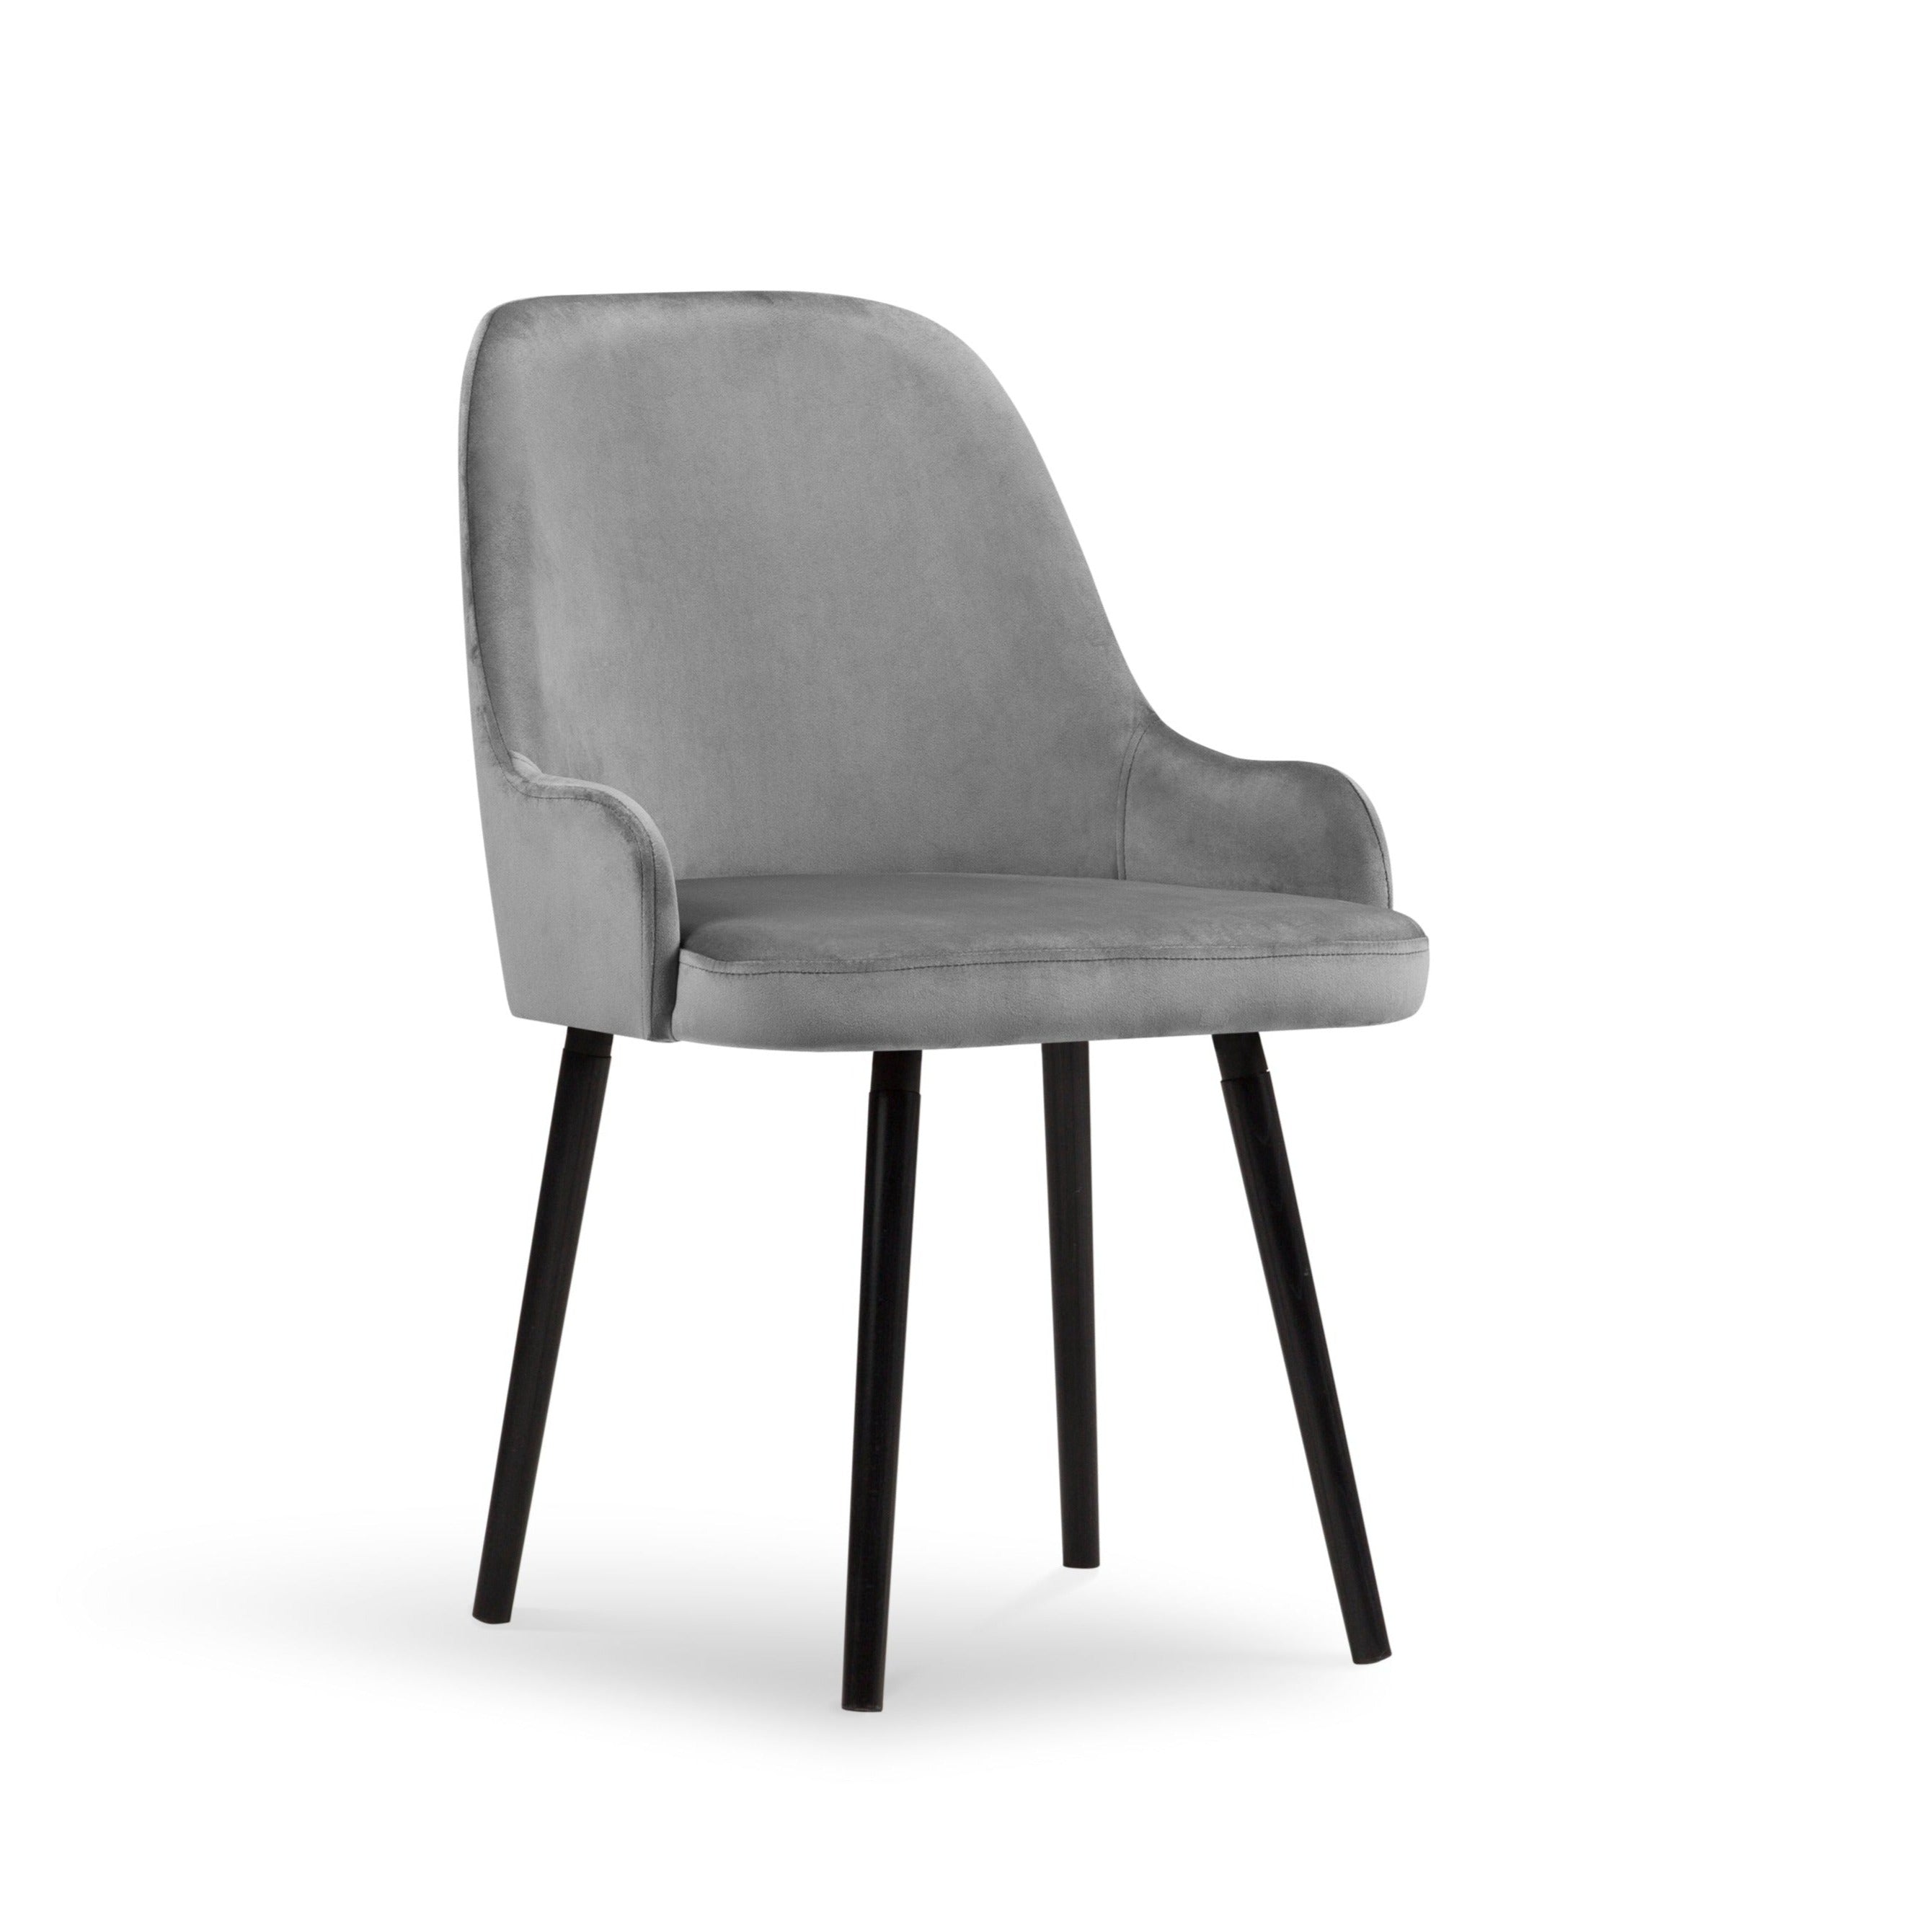 Flint chair light gray